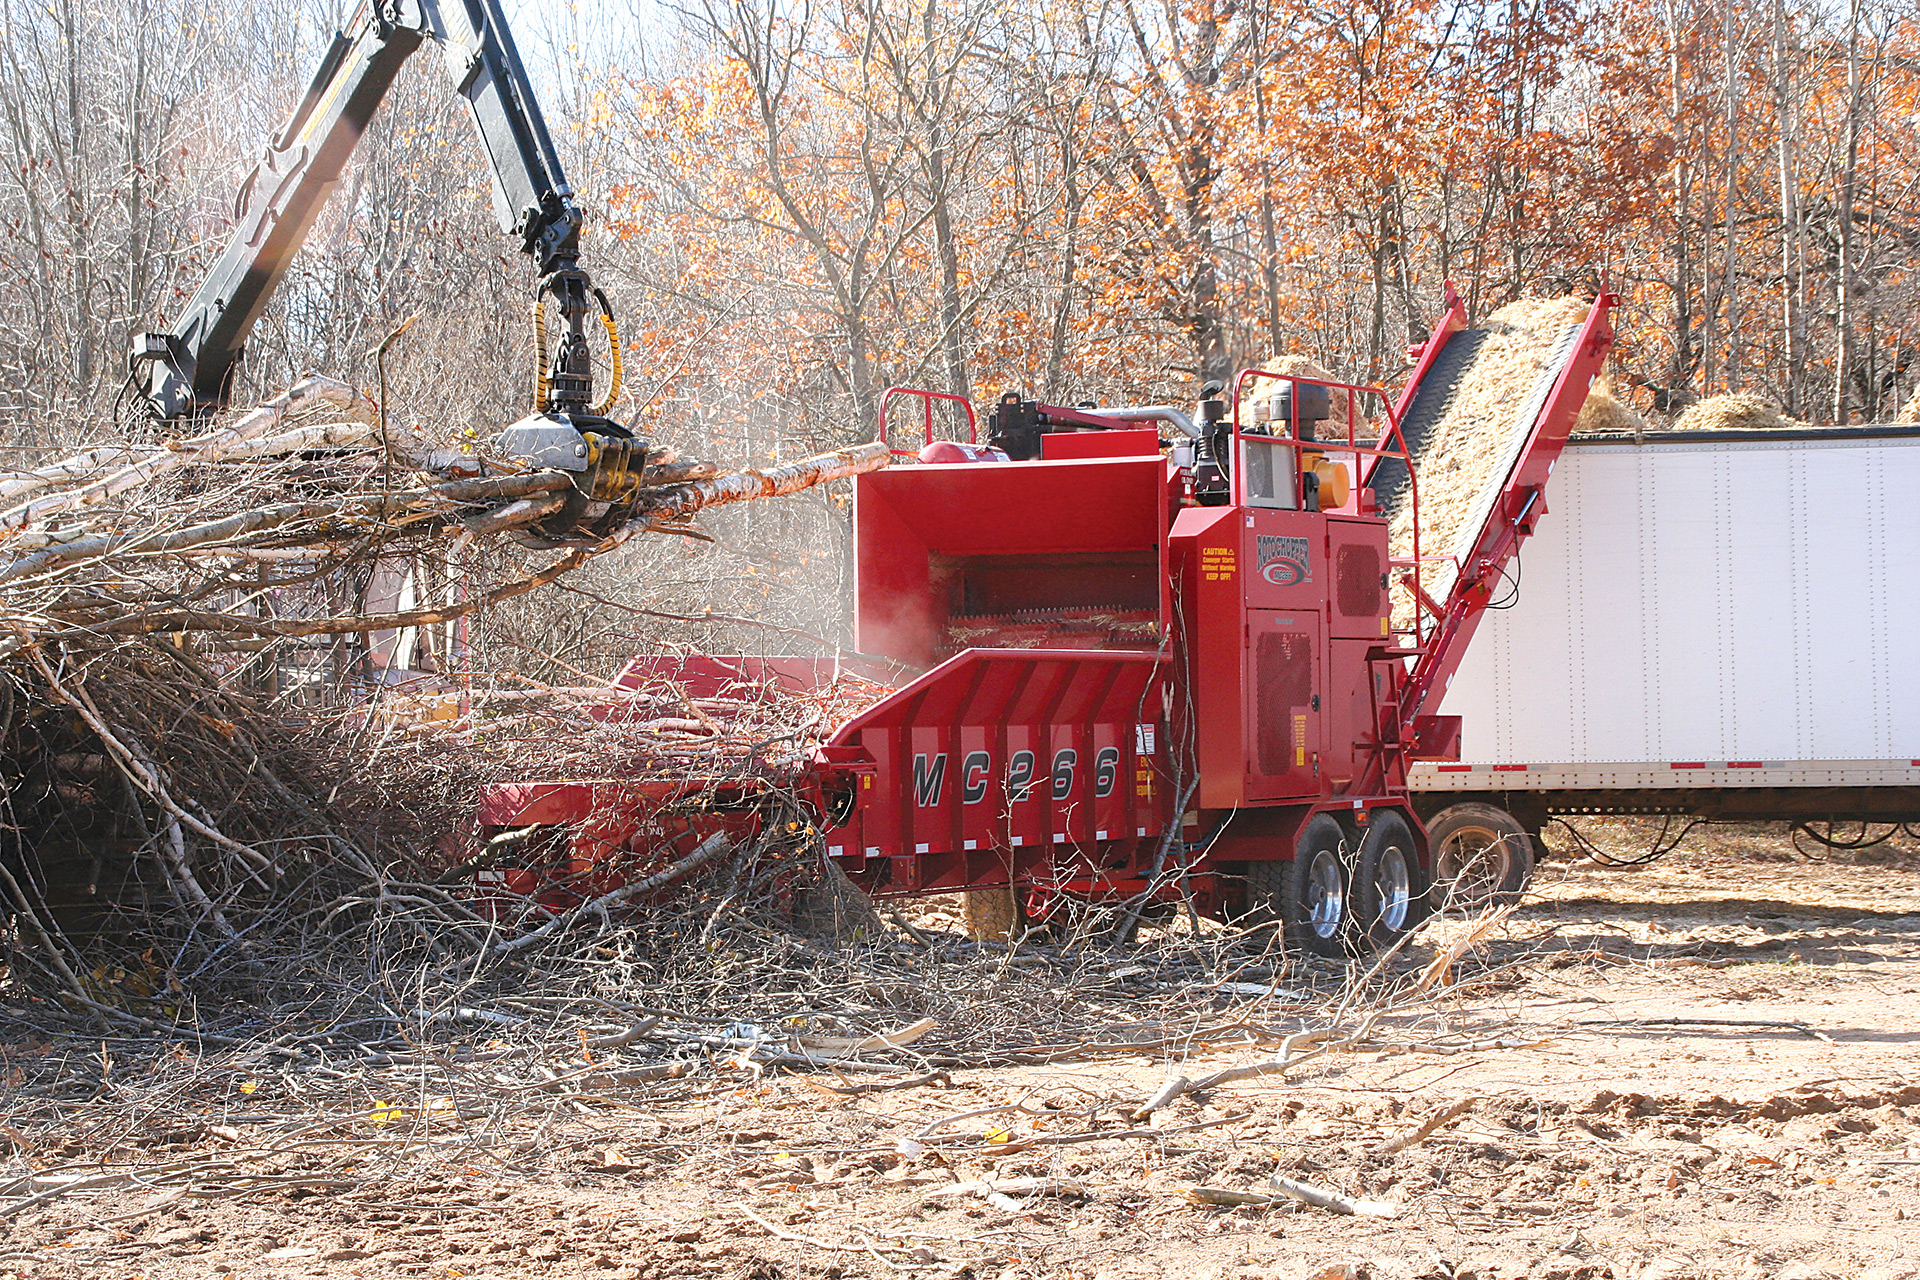 mc266 rotochopper grinder forestry slash biomass fuel